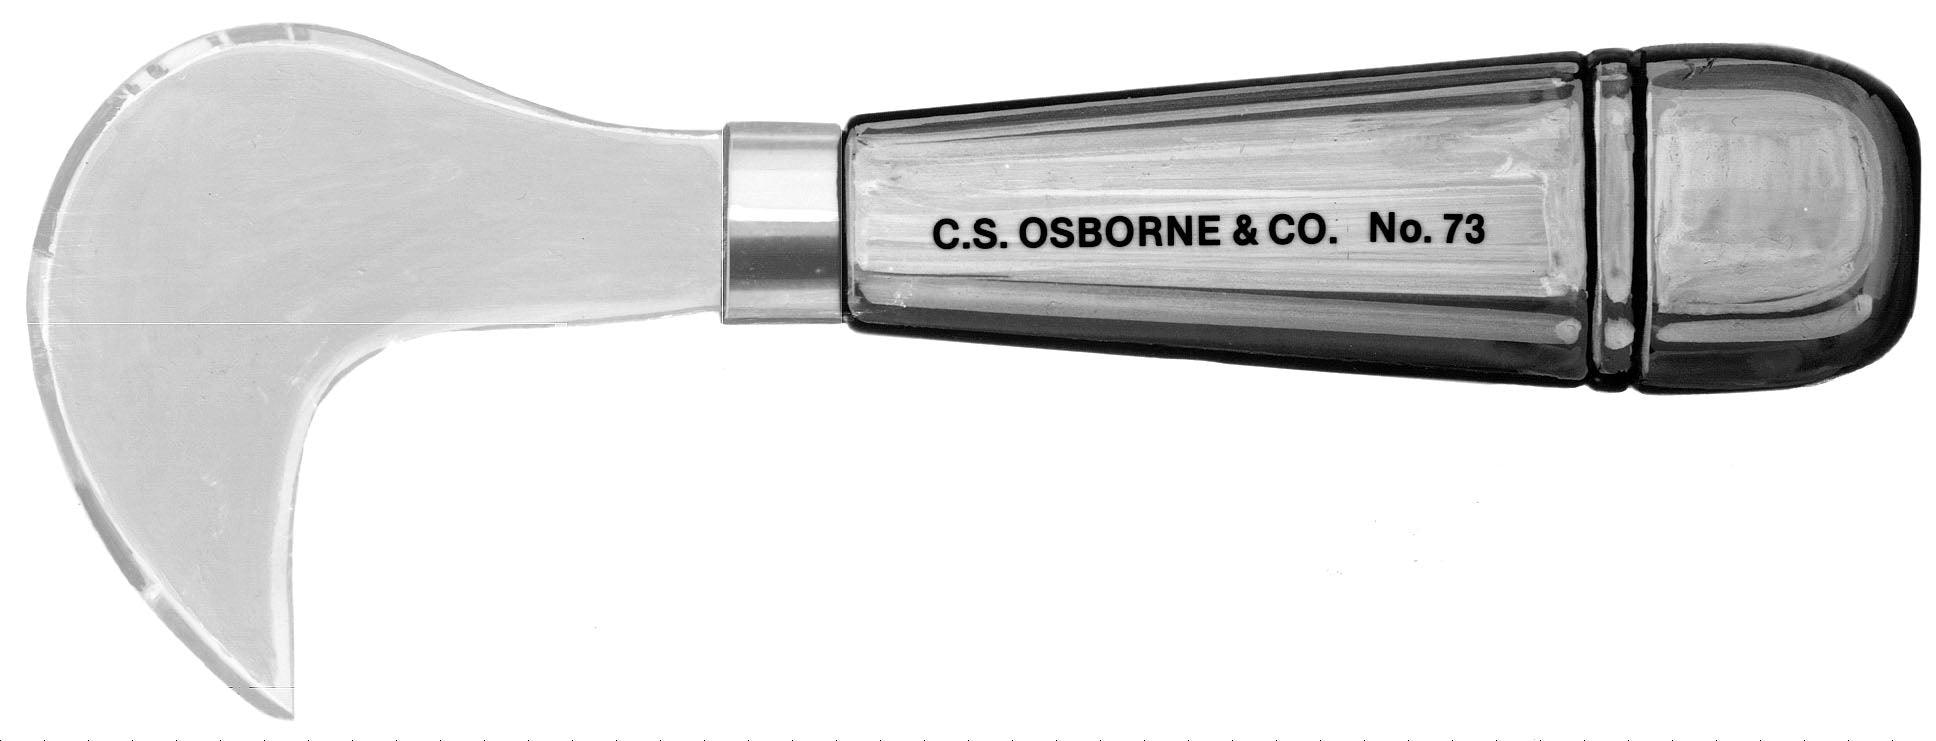 C.S. Osborne Lead Knife - Alan Richard Textiles, LTD C.S. Osborne Knives